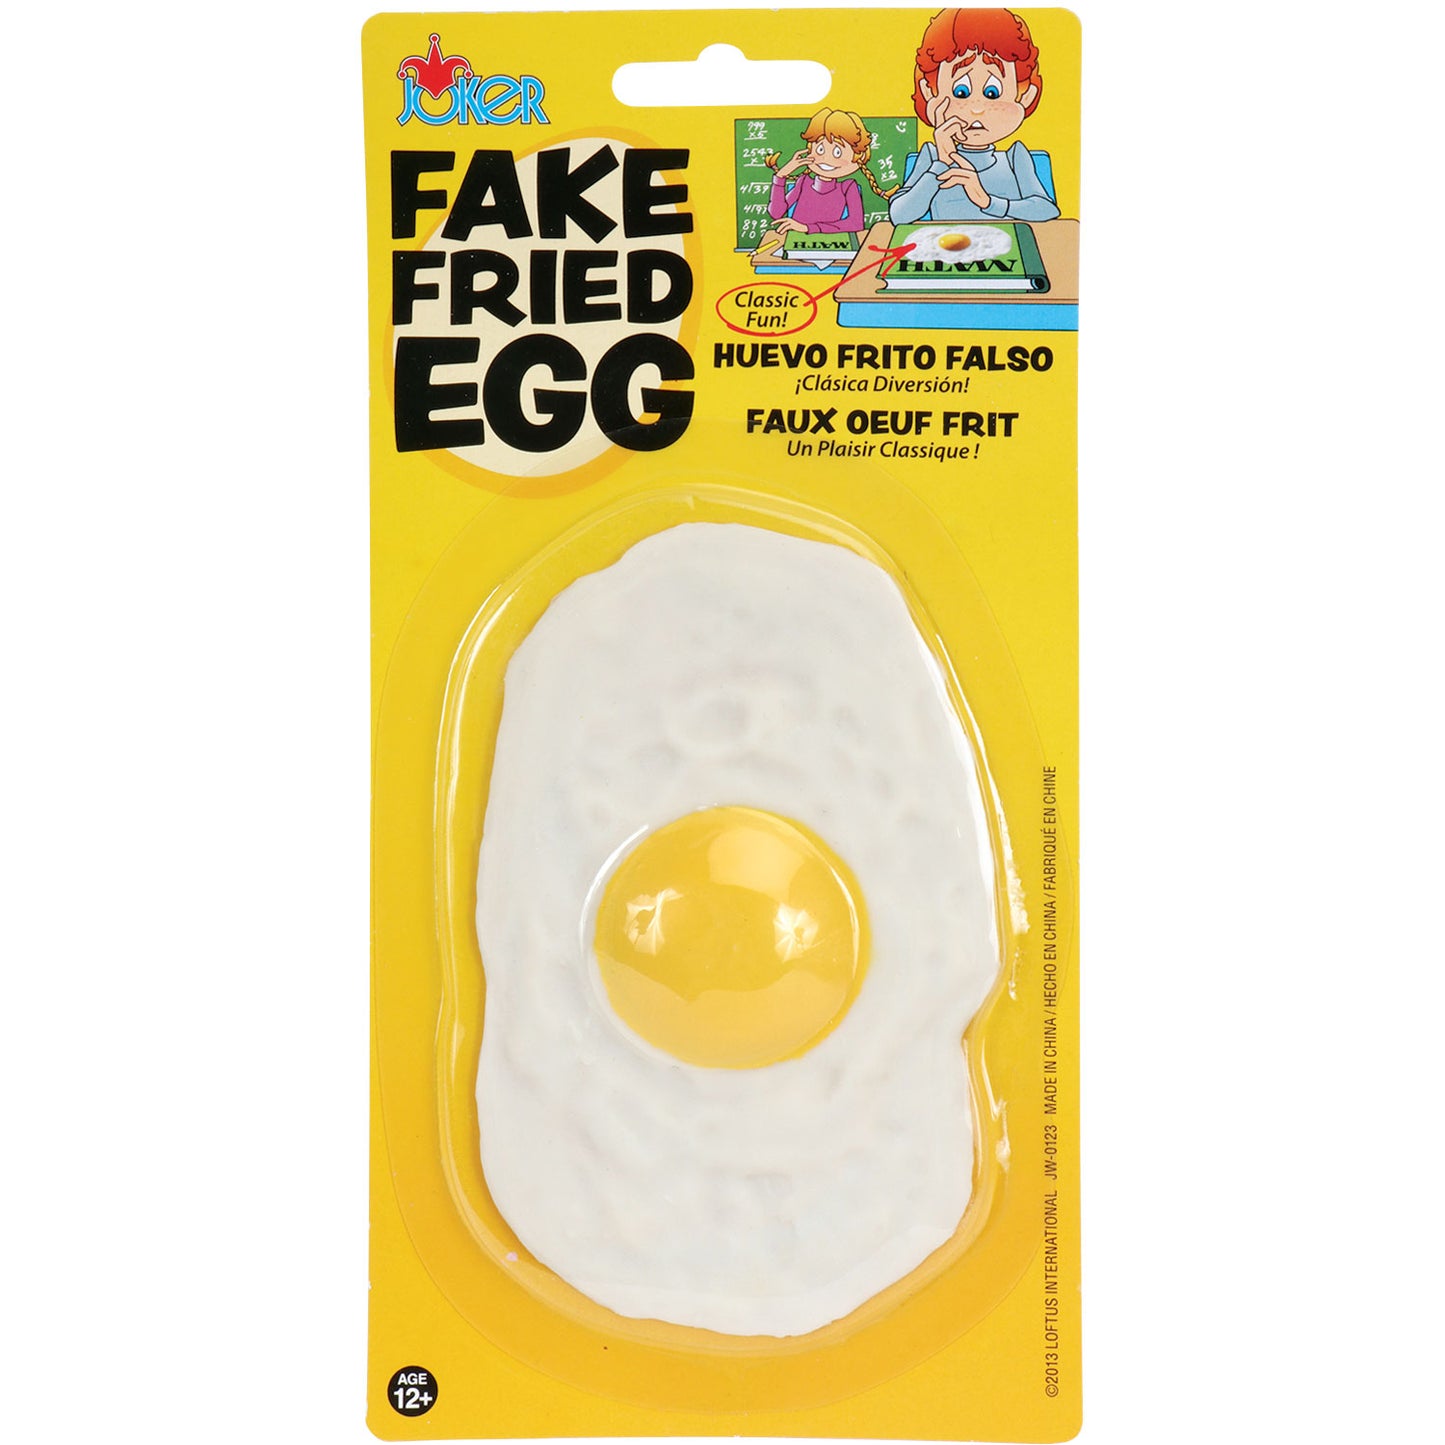 Fake Fried Egg